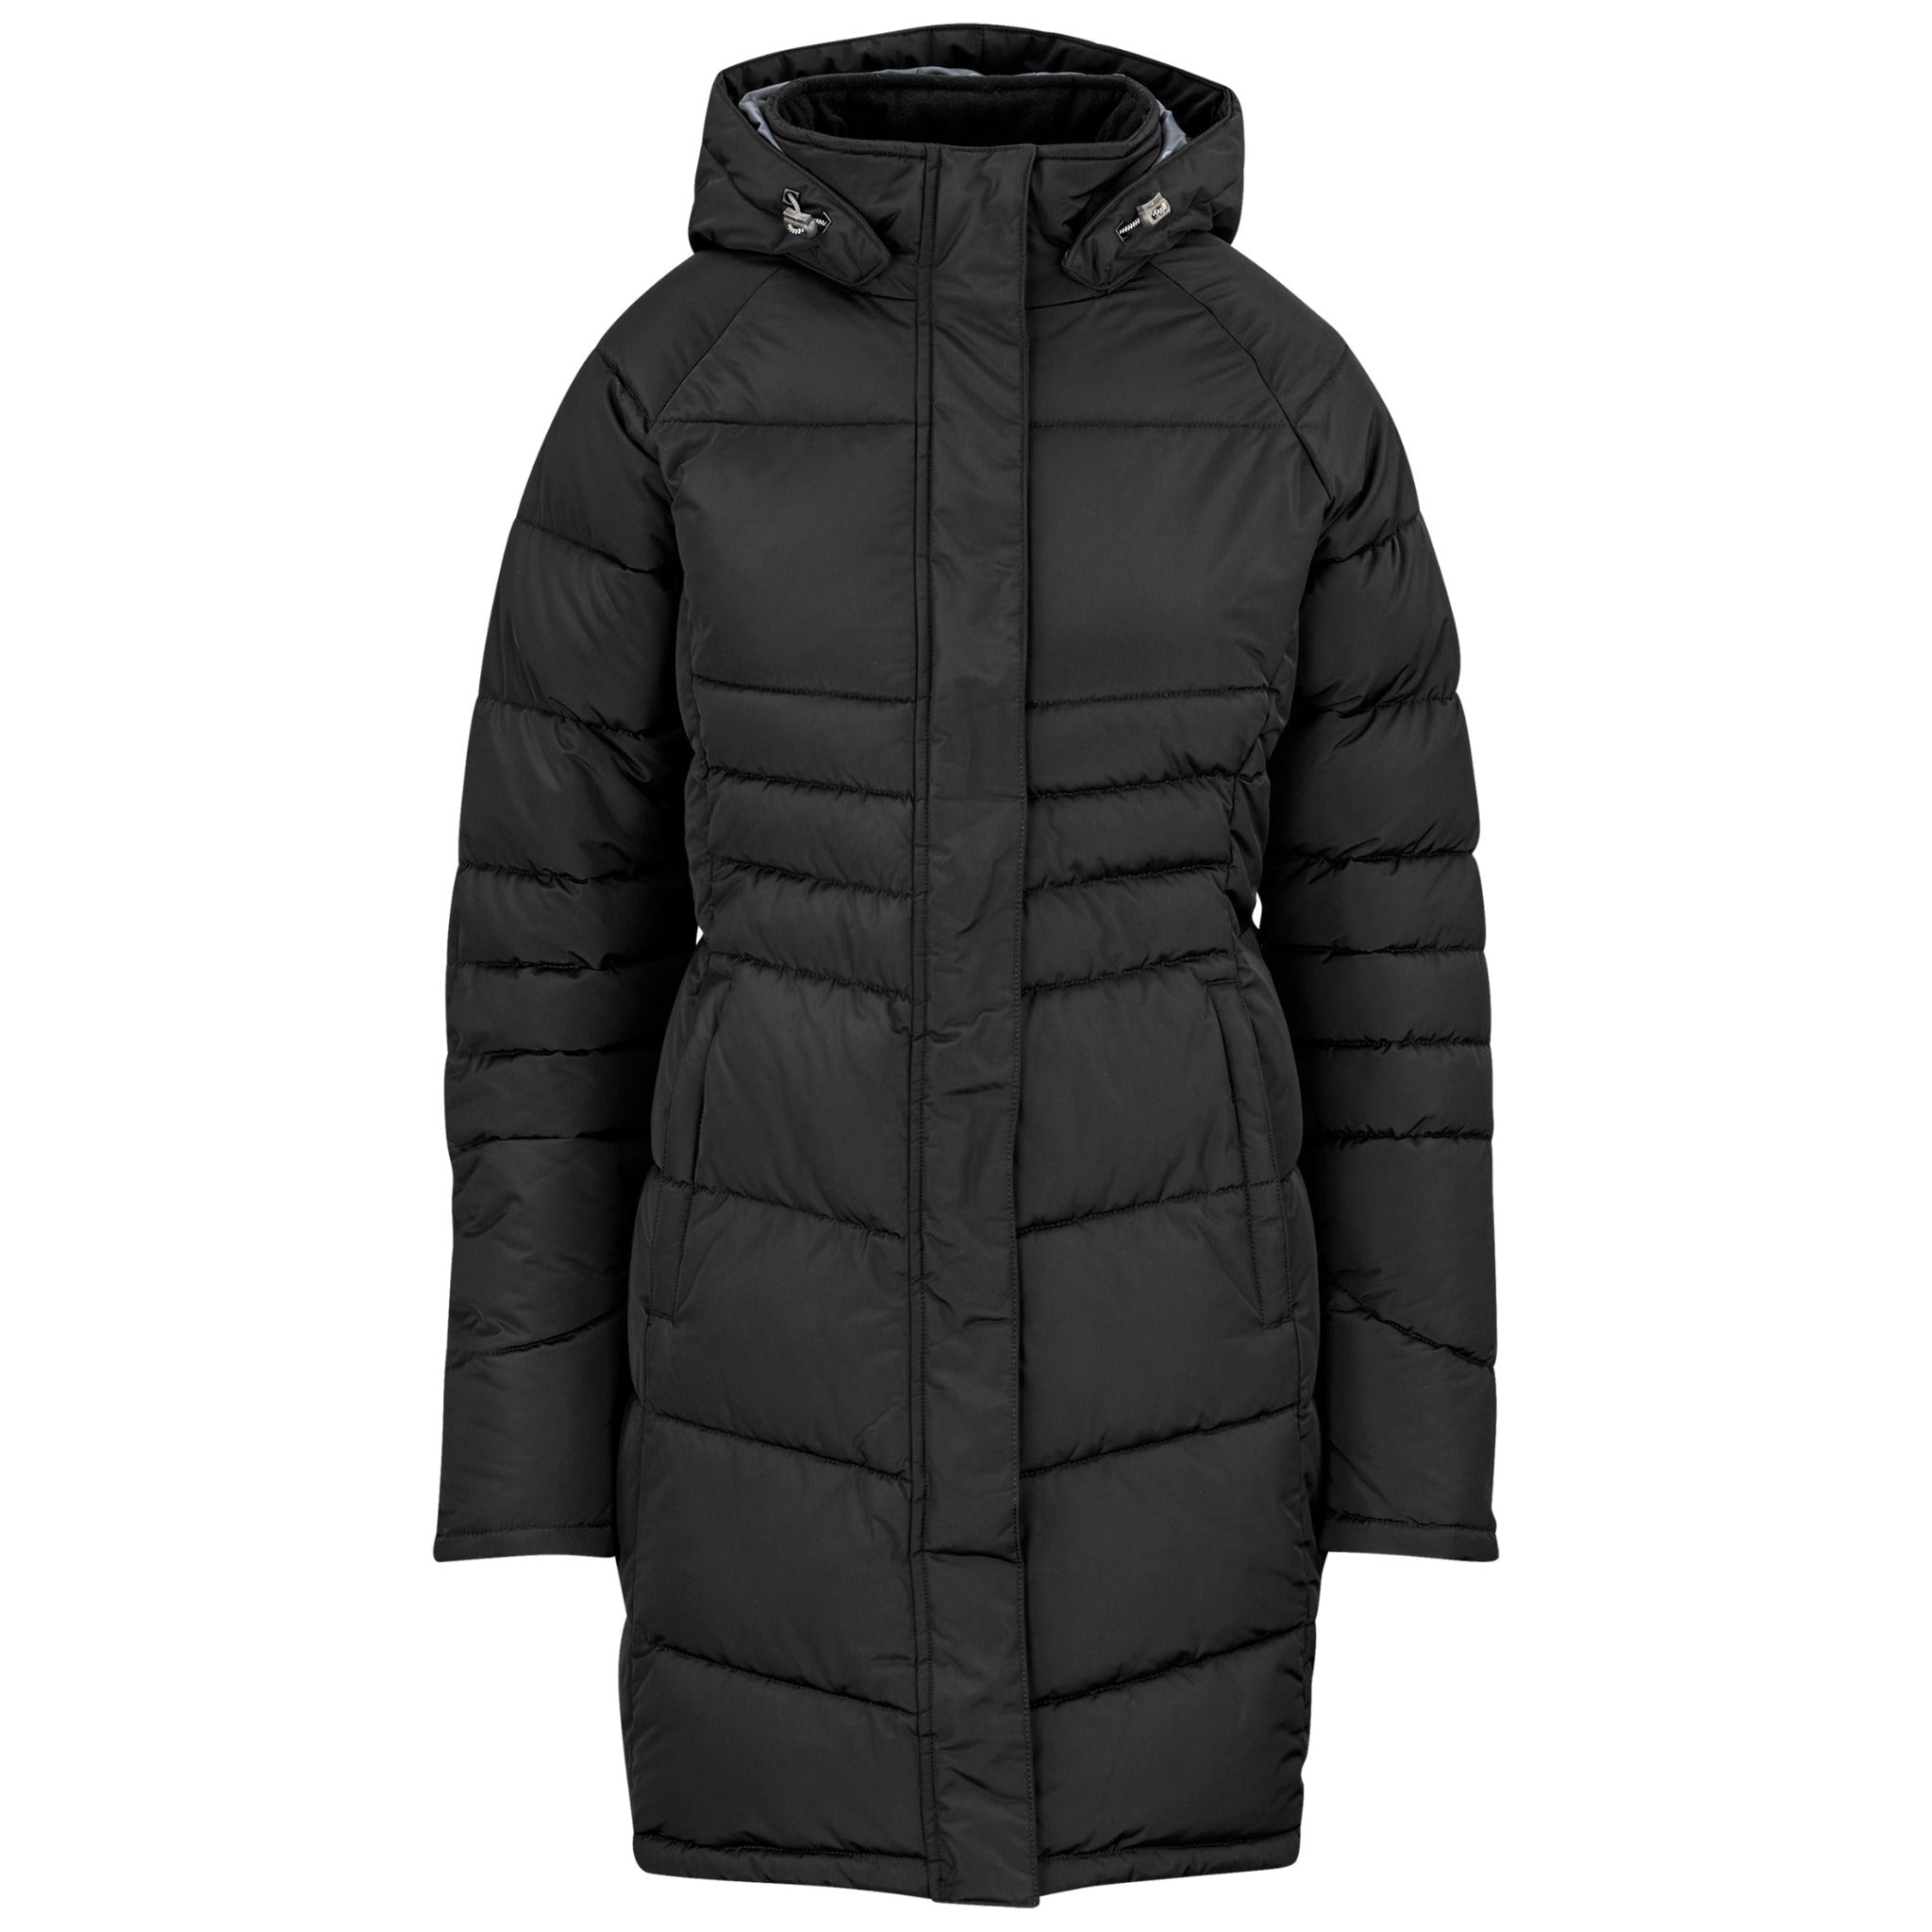 Black knee-length padded ladies winter jacket